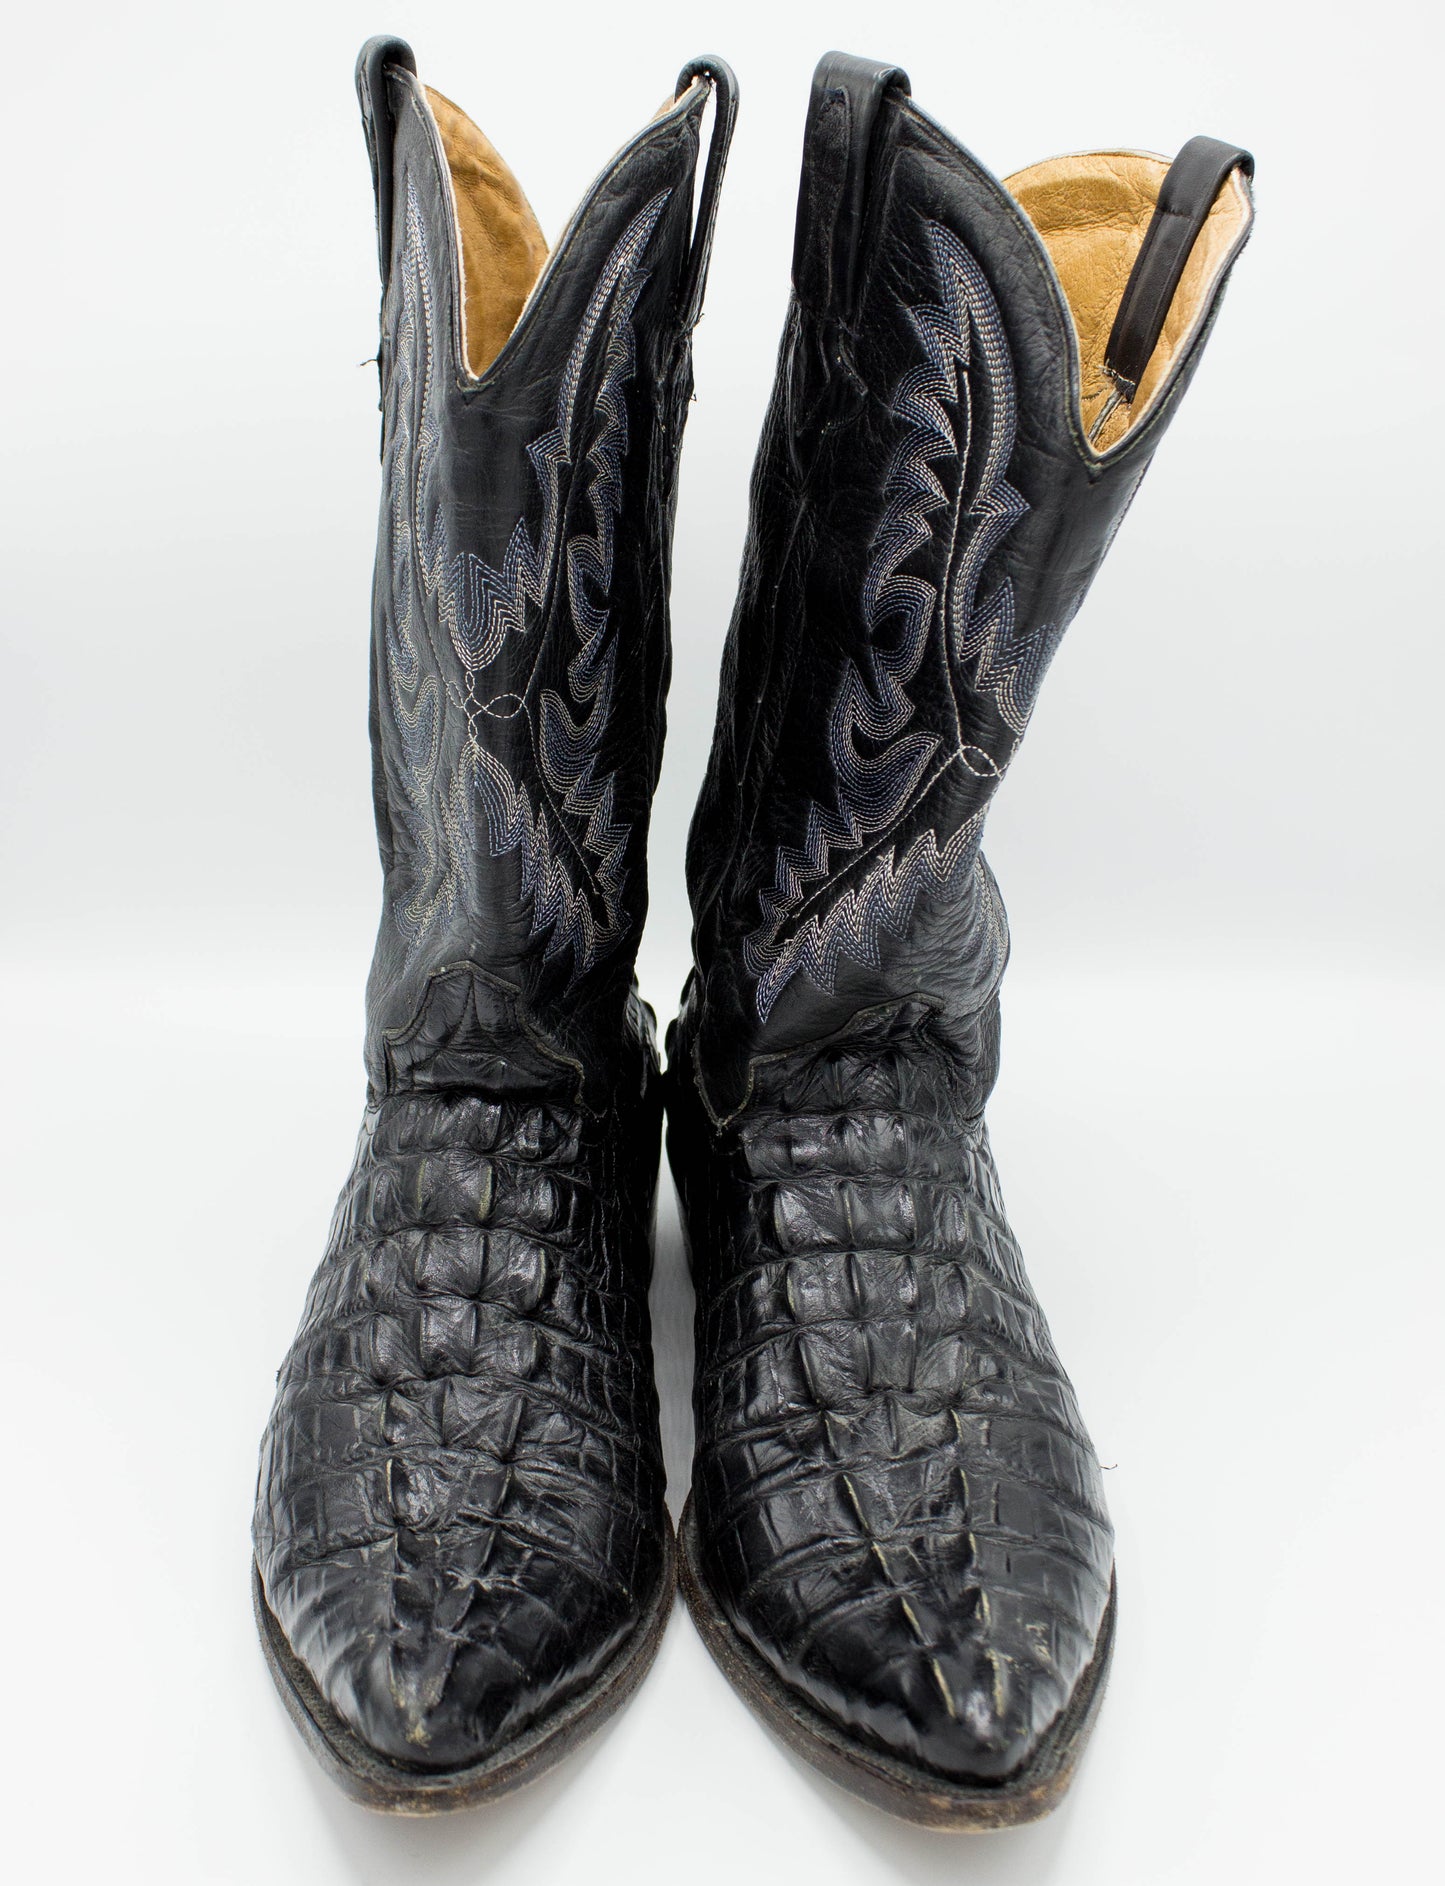 Vintage Men's El Presidente Gold Collection Black Alligator Cowboy Boots Size 15